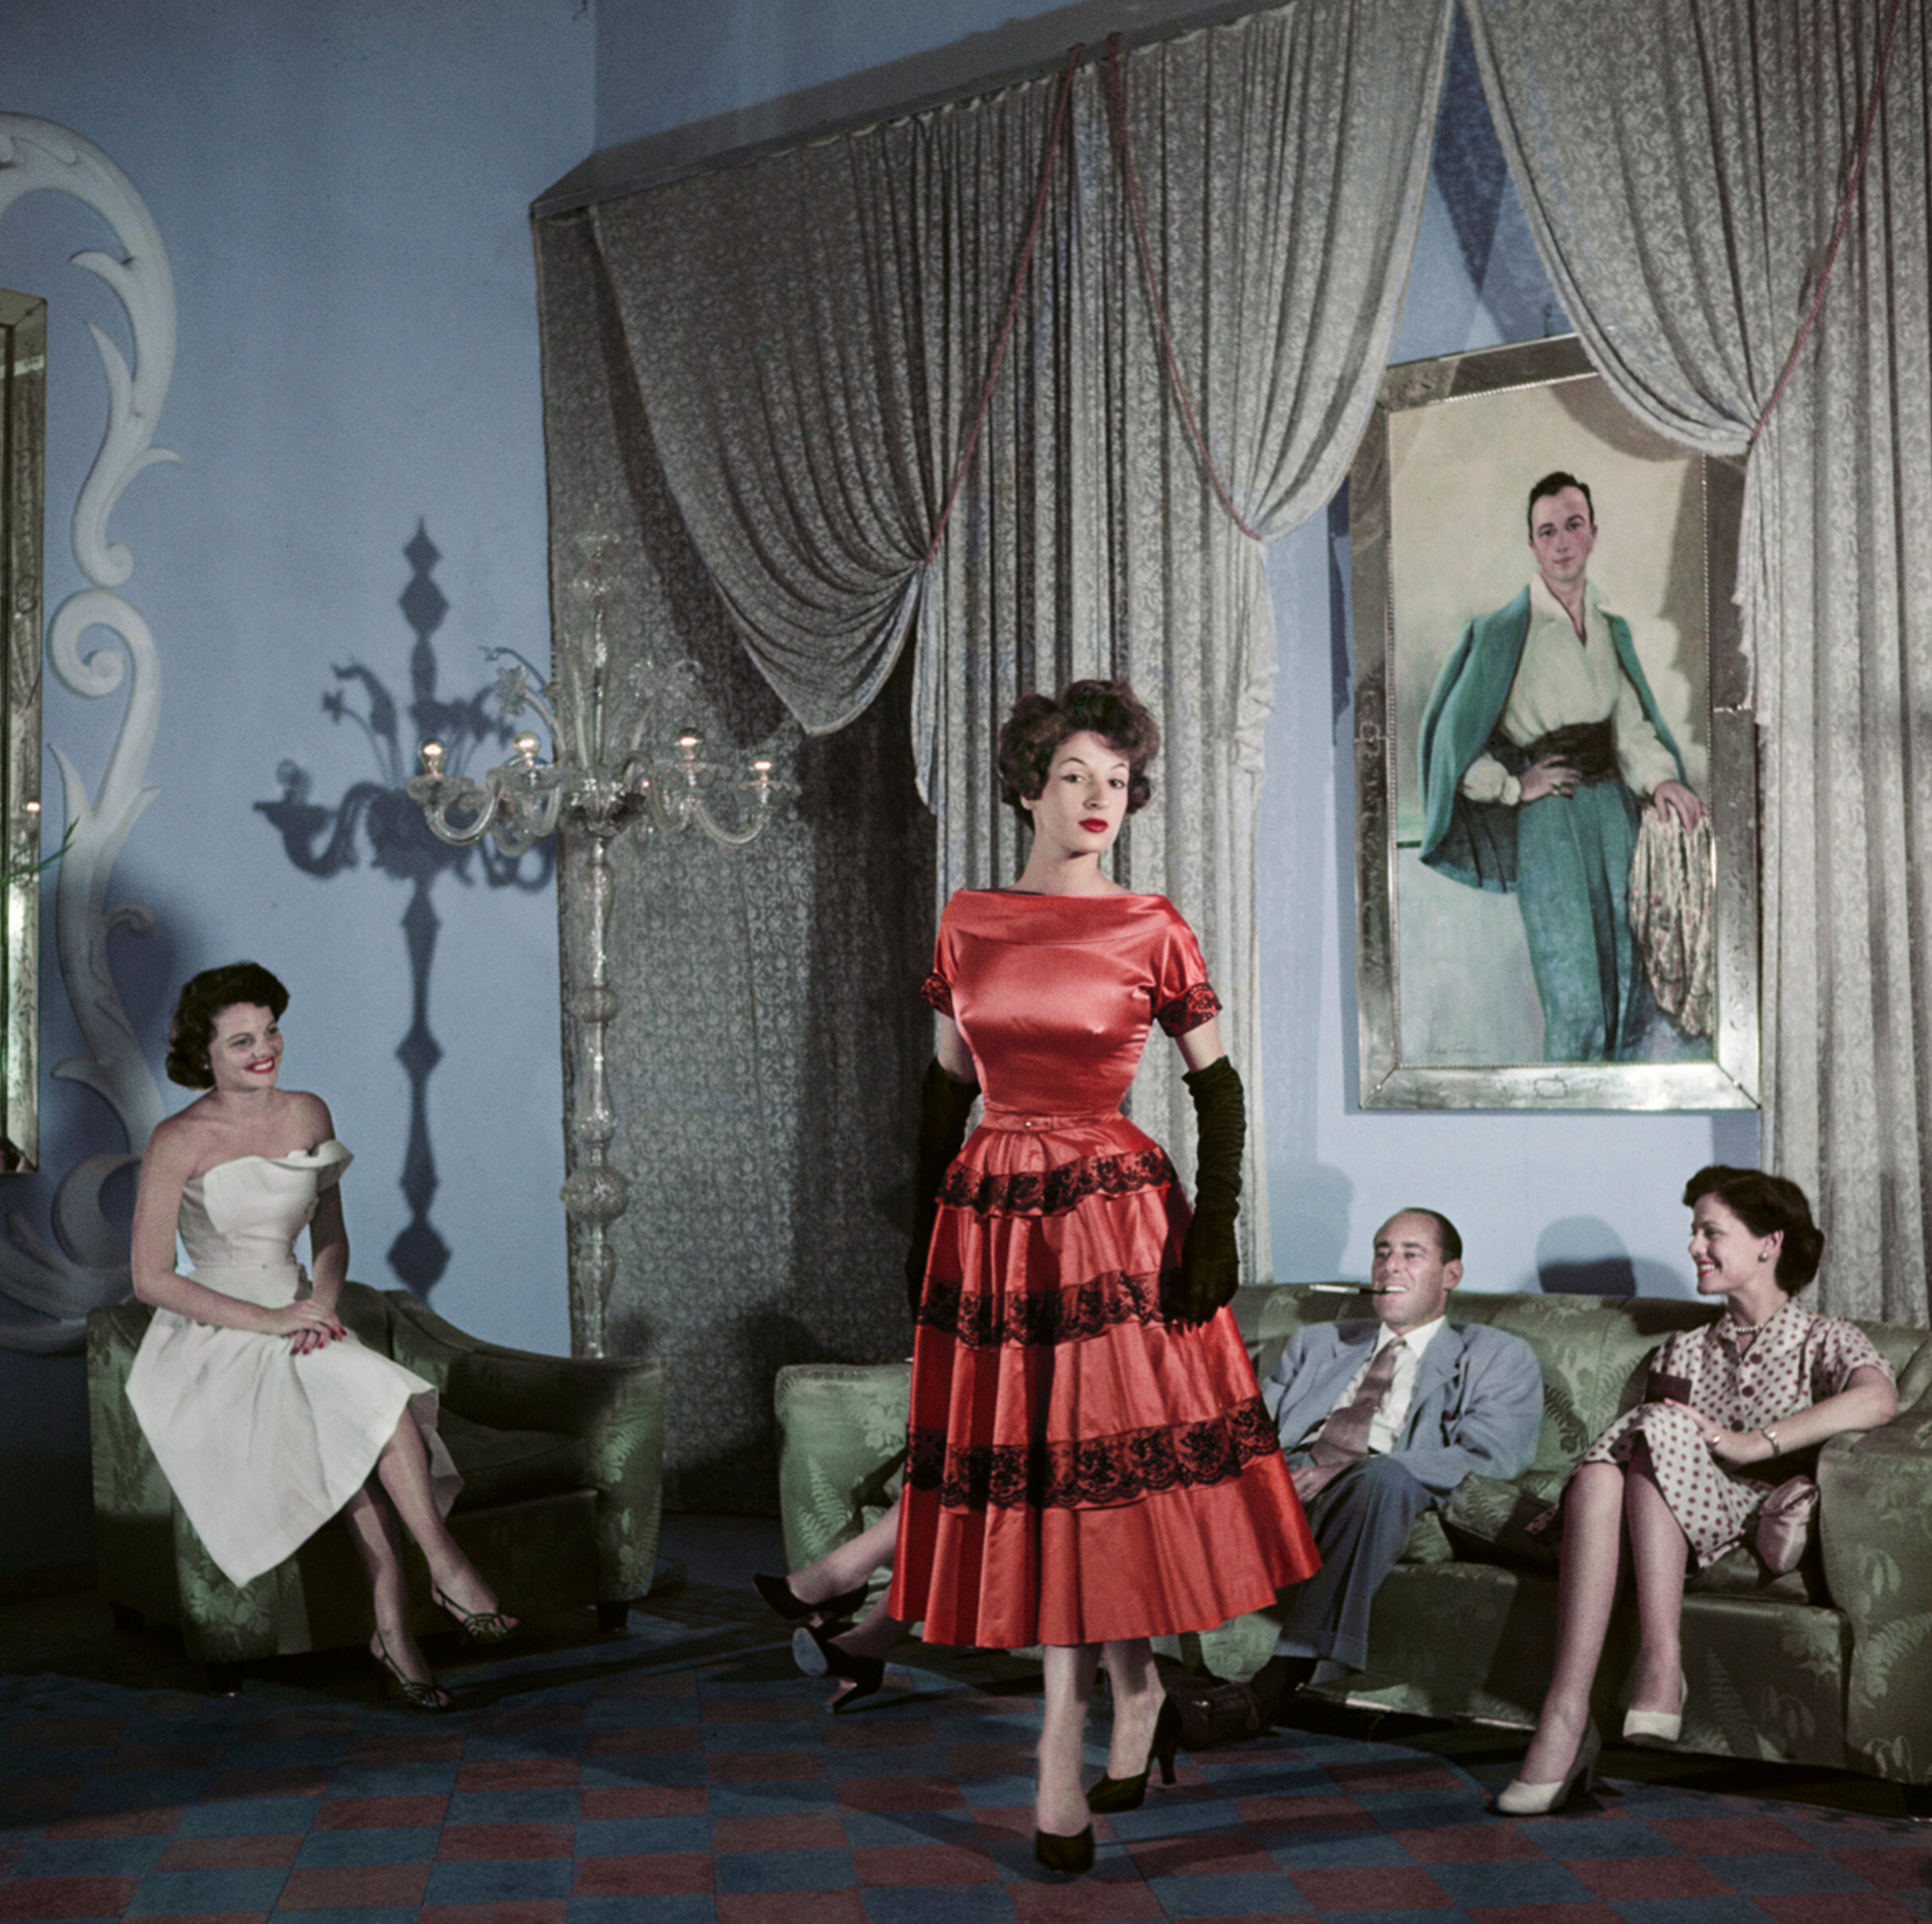 Актрисы и сестры Глория Струк (справа) и Джеральдин Брукс (слева) в доме моды Эмилио Шуберта, Рим, август 1951 года. Фотограф Роберт Капа